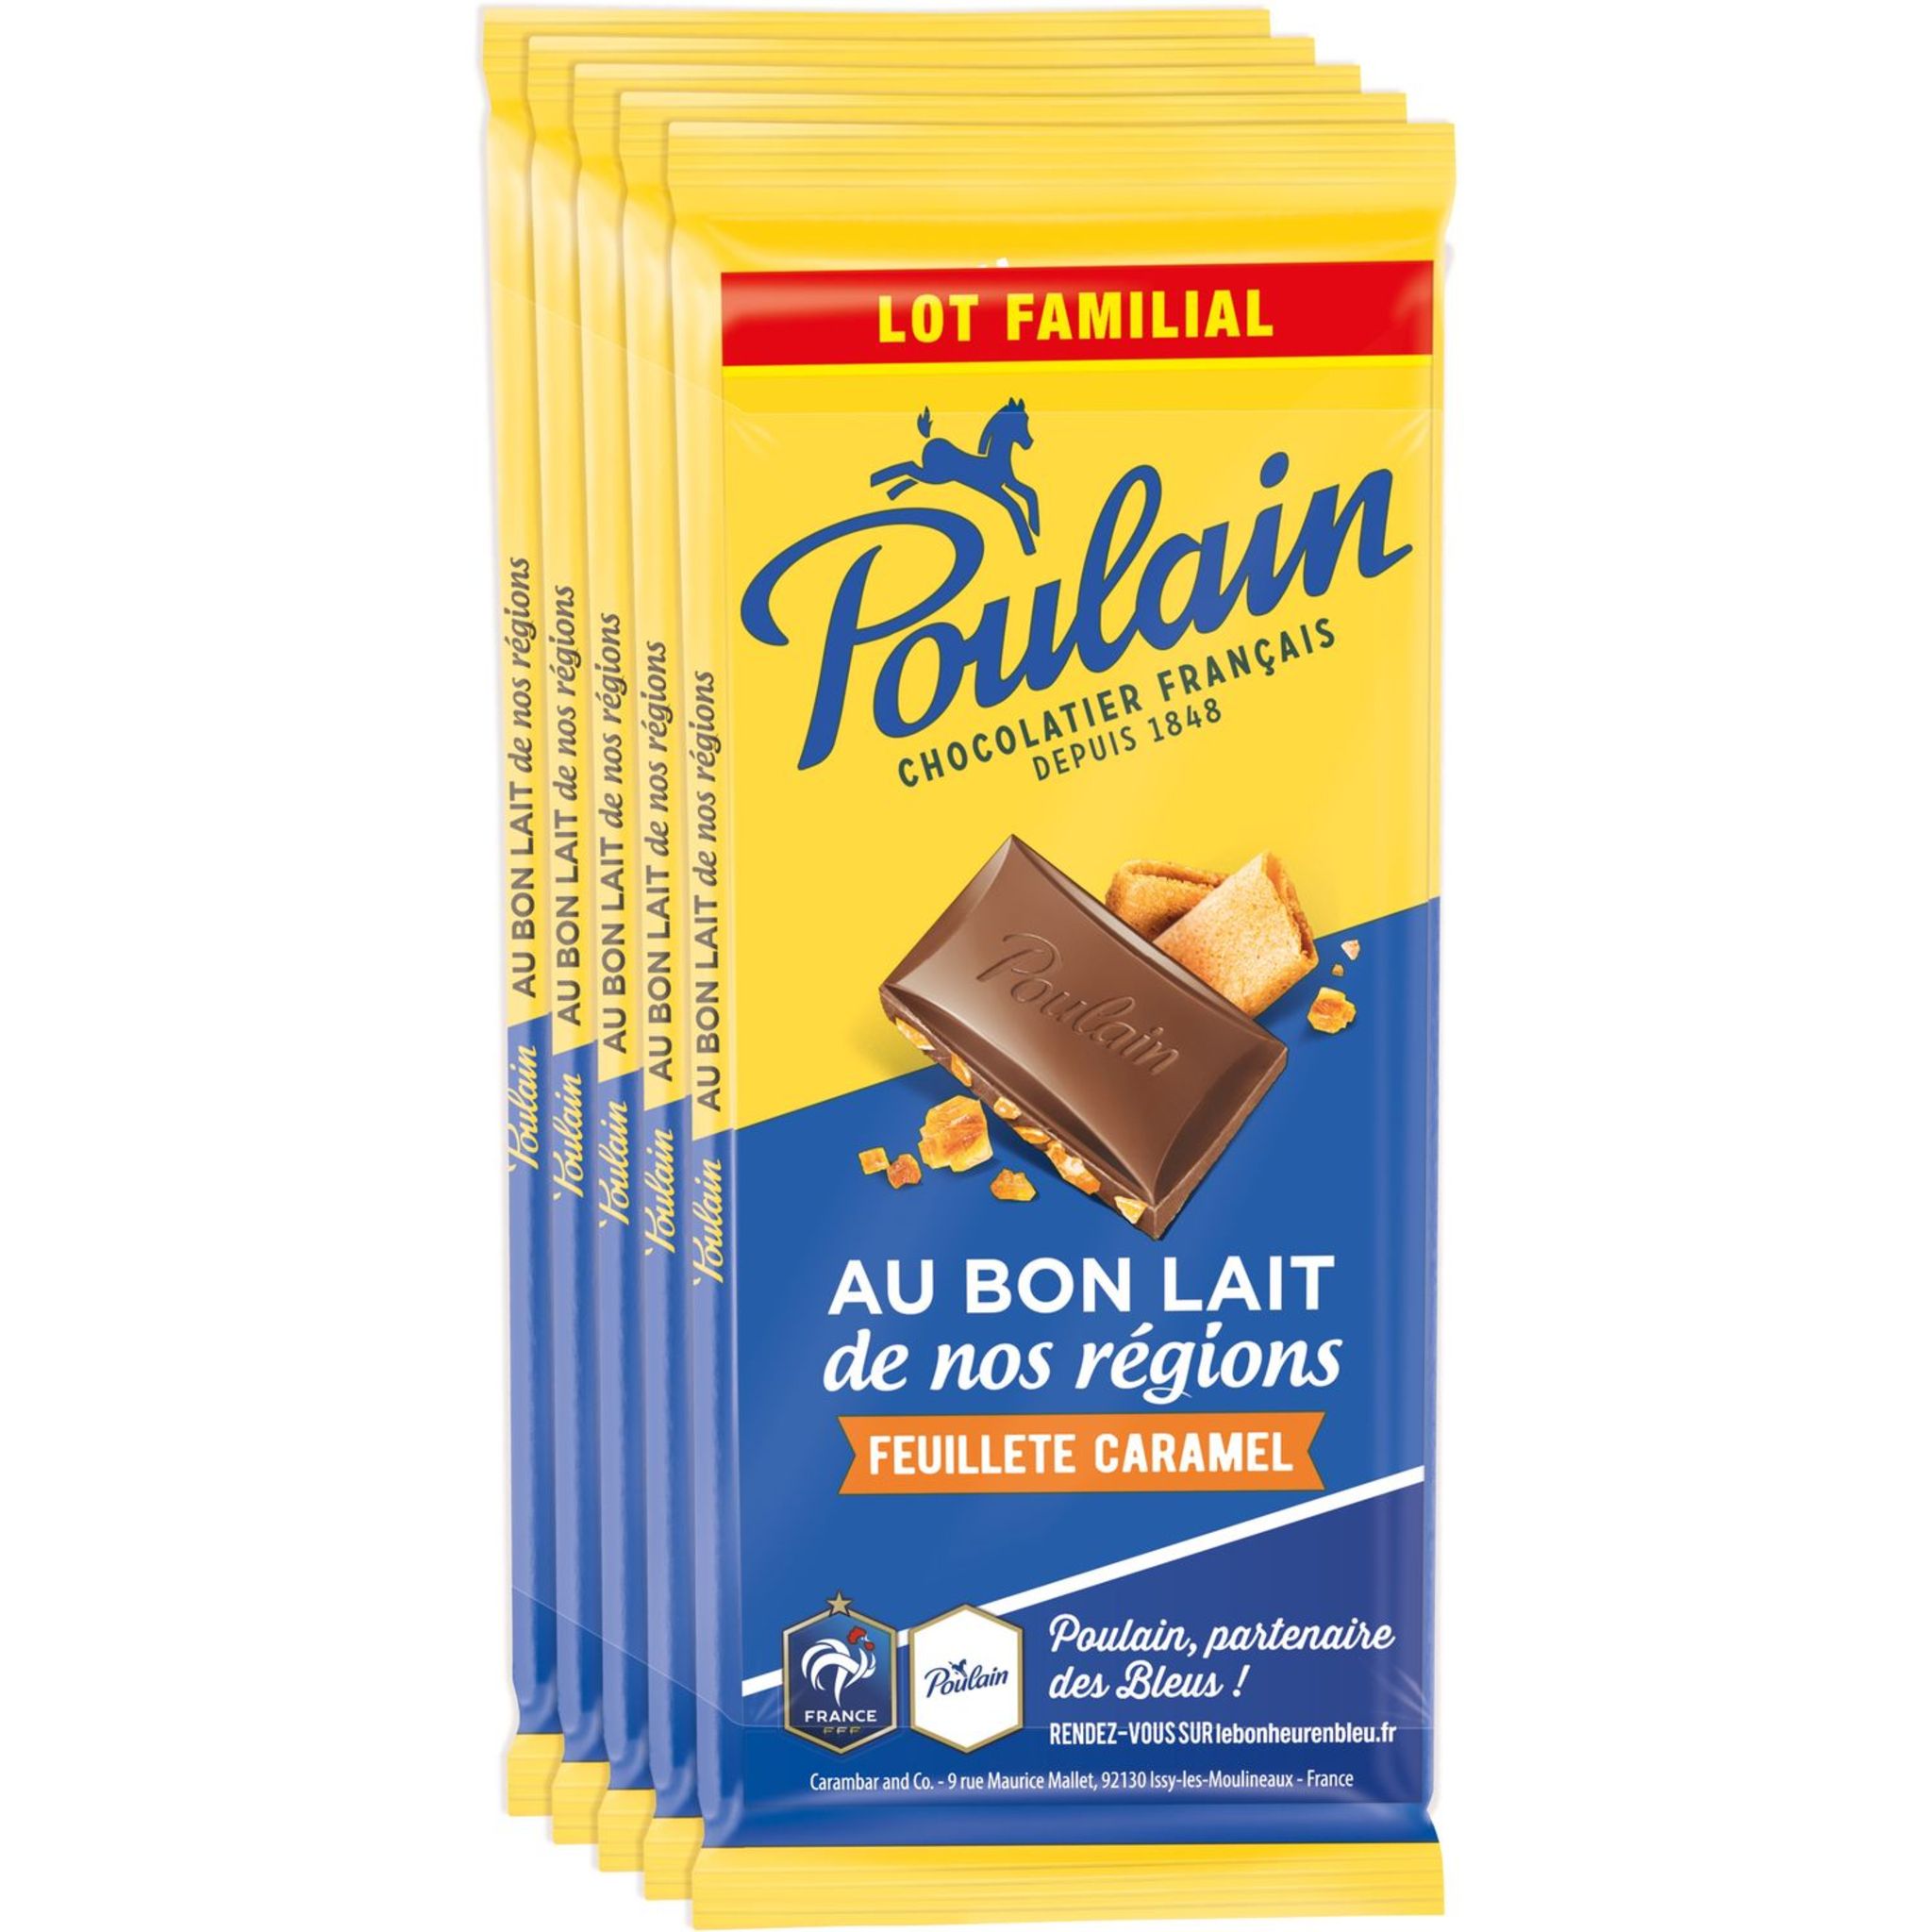 Tablette de chocolat Poulain au Carambar de Poulain